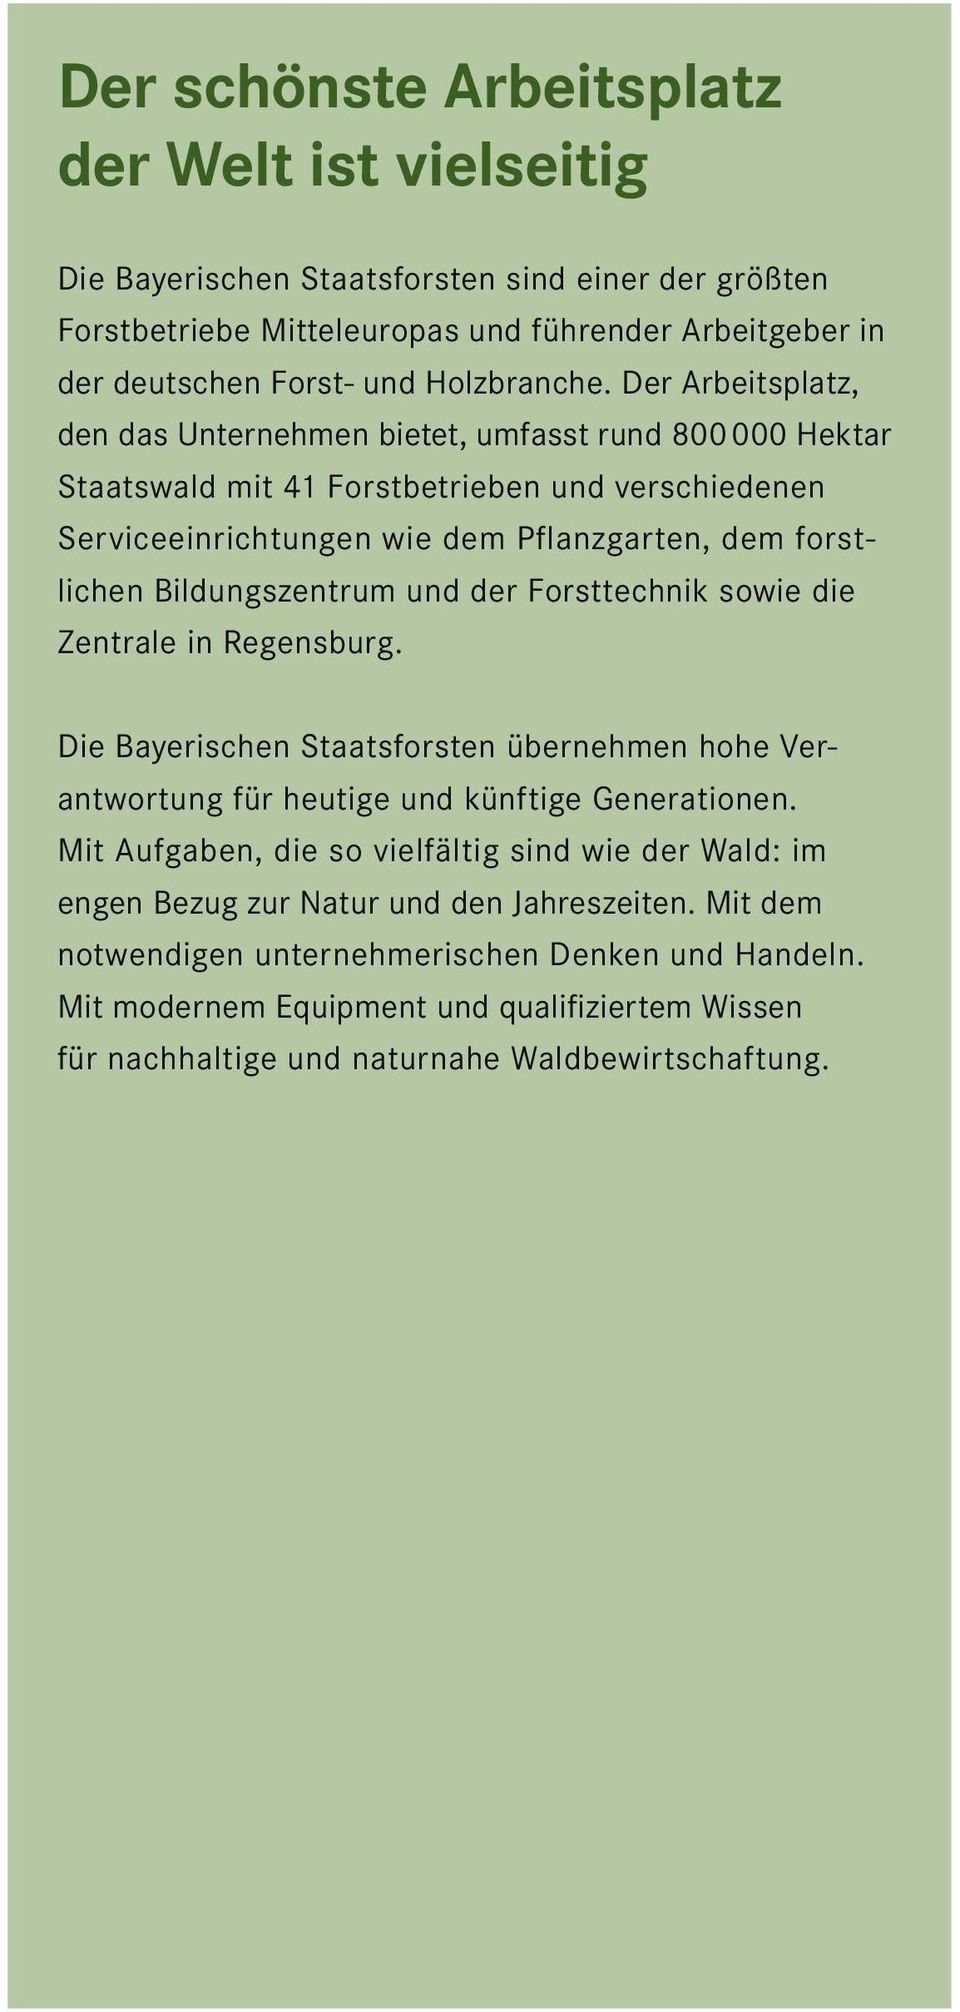 und der Forsttechnik sowie die Zentrale in Regensburg. Die Bayerischen Staatsforsten übernehmen hohe Verantwortung für heutige und künftige Generationen.